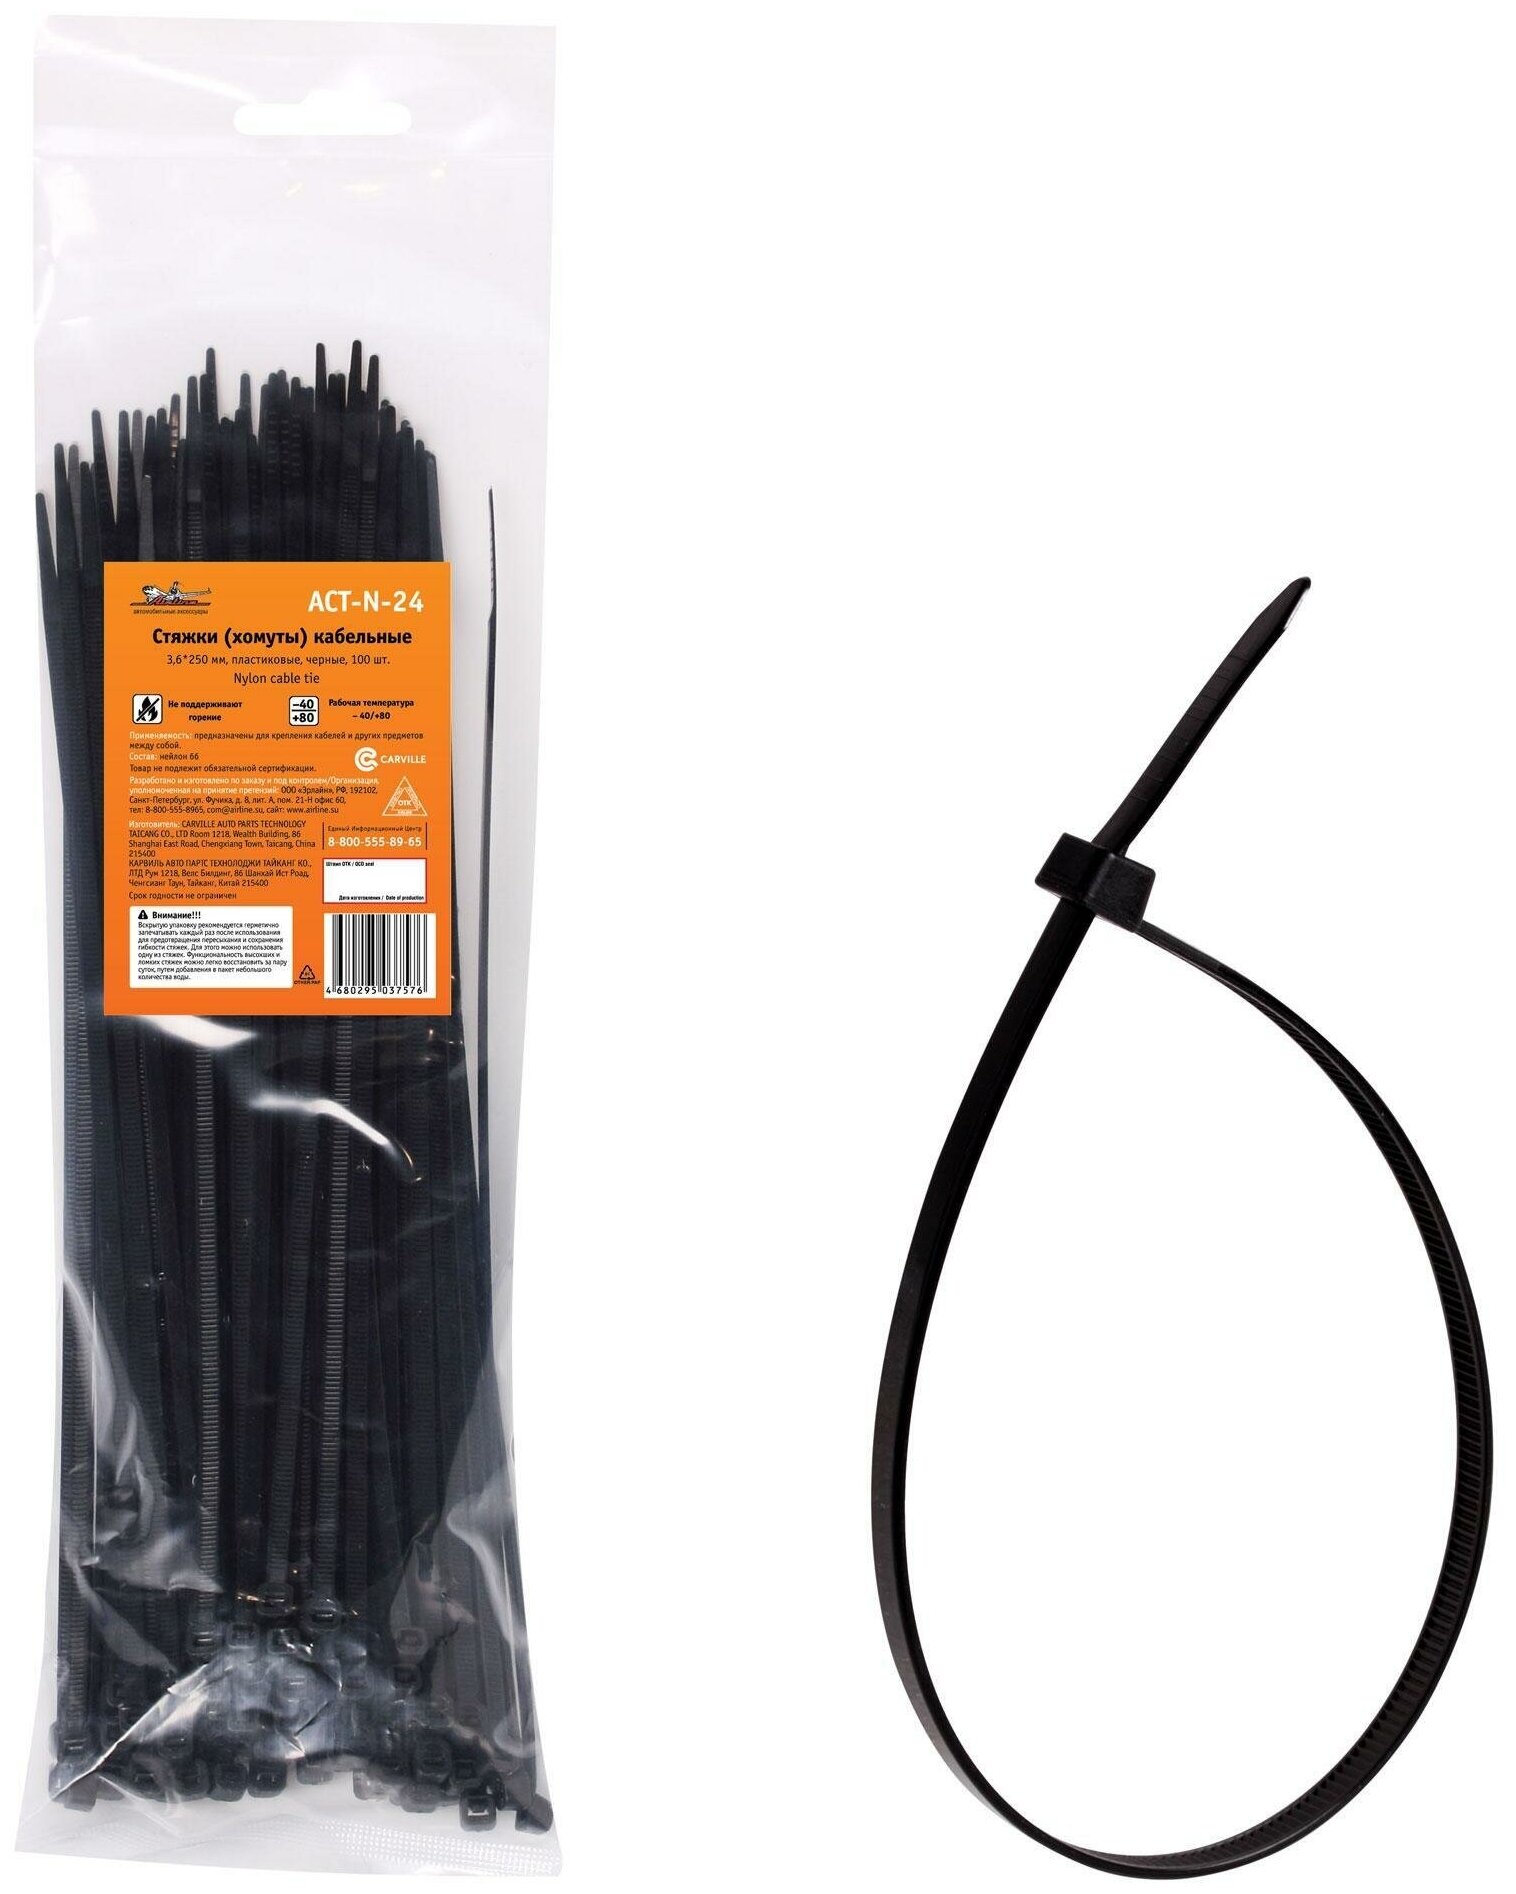 Стяжки (хомуты) кабельные 36*250 мм пластиковые черные 100 шт. (ACT-N-24)